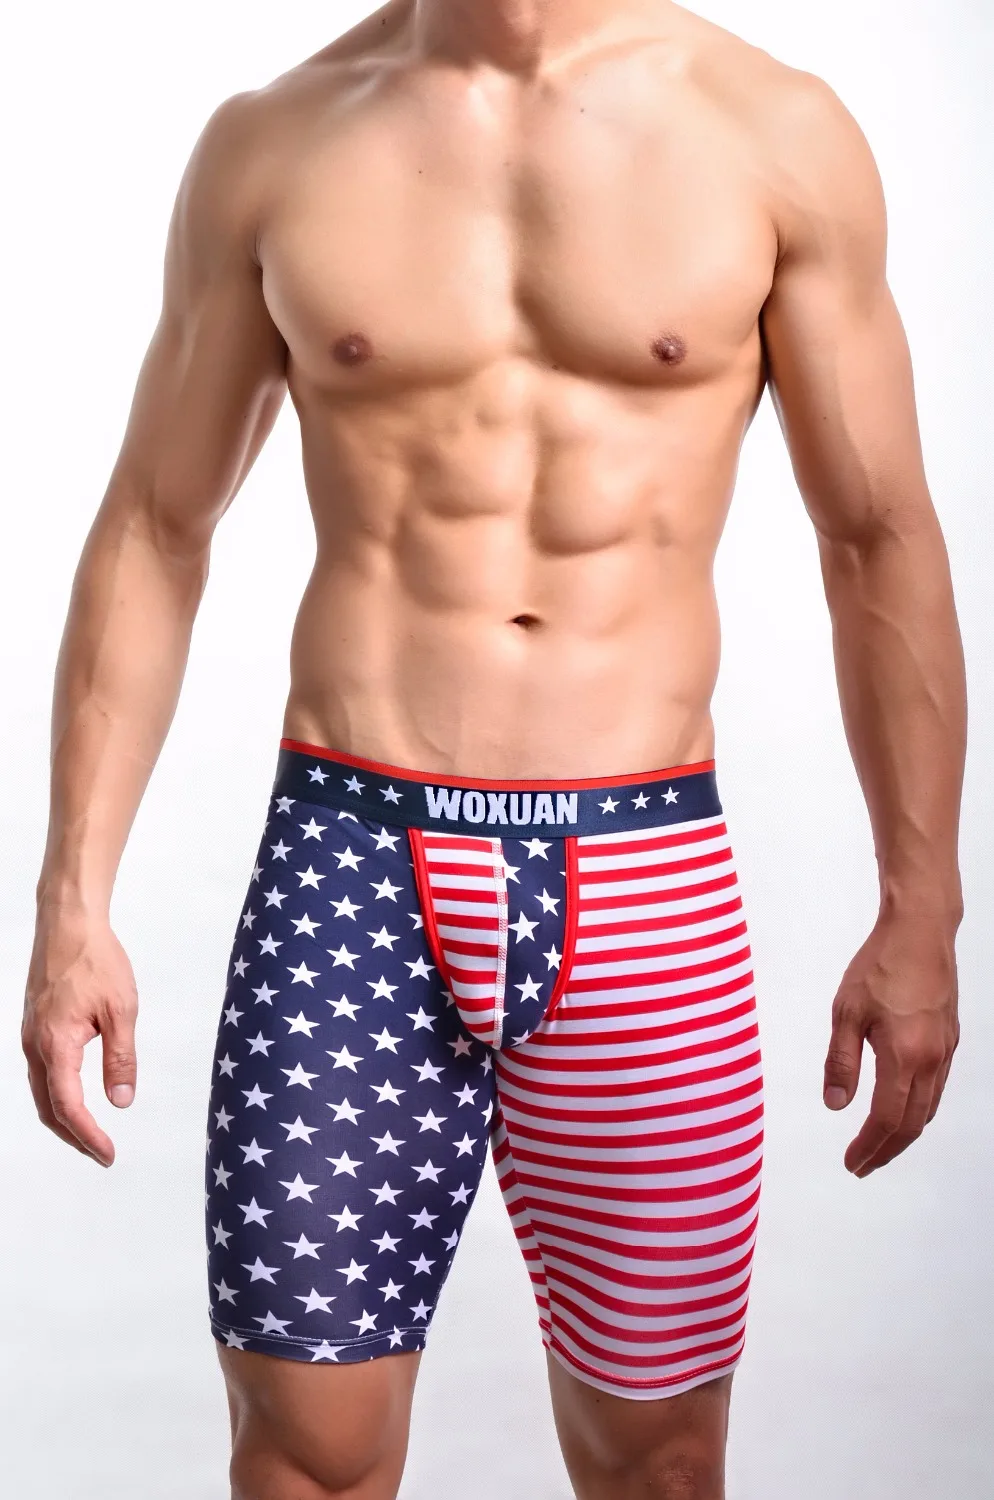 Woxuan Новое поступление, летний модный принт в виде американского флага, мужские сексуальные новые обтягивающие леггинсы, штаны для отдыха/Веселые штаны для геев, пляжная одежда